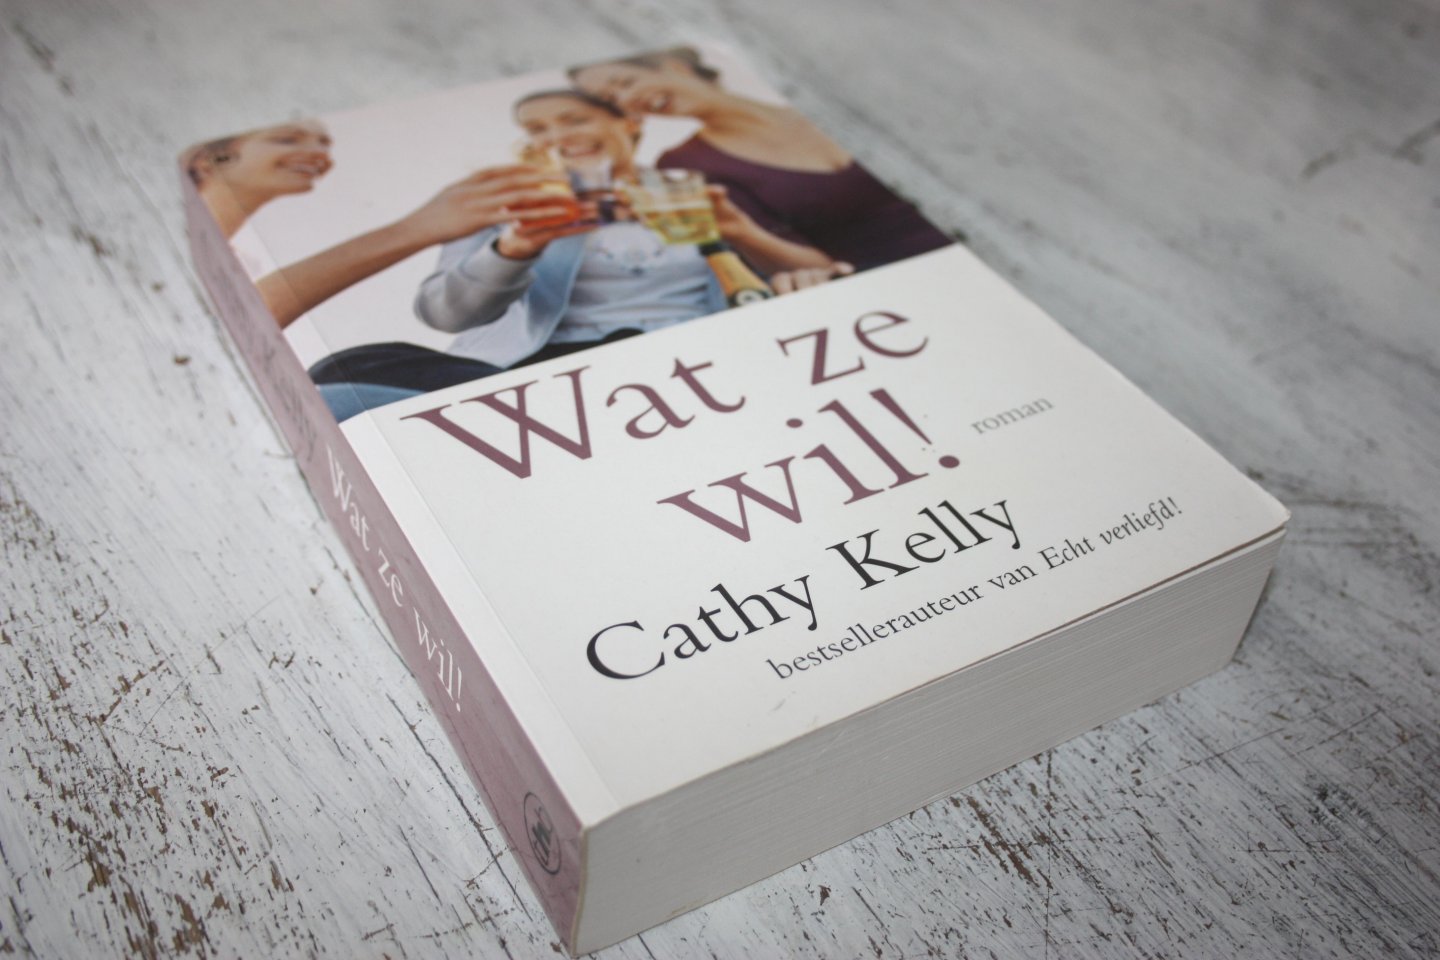 Kelly, Cathy - Cathy Kelly / WAT ZE WIL !